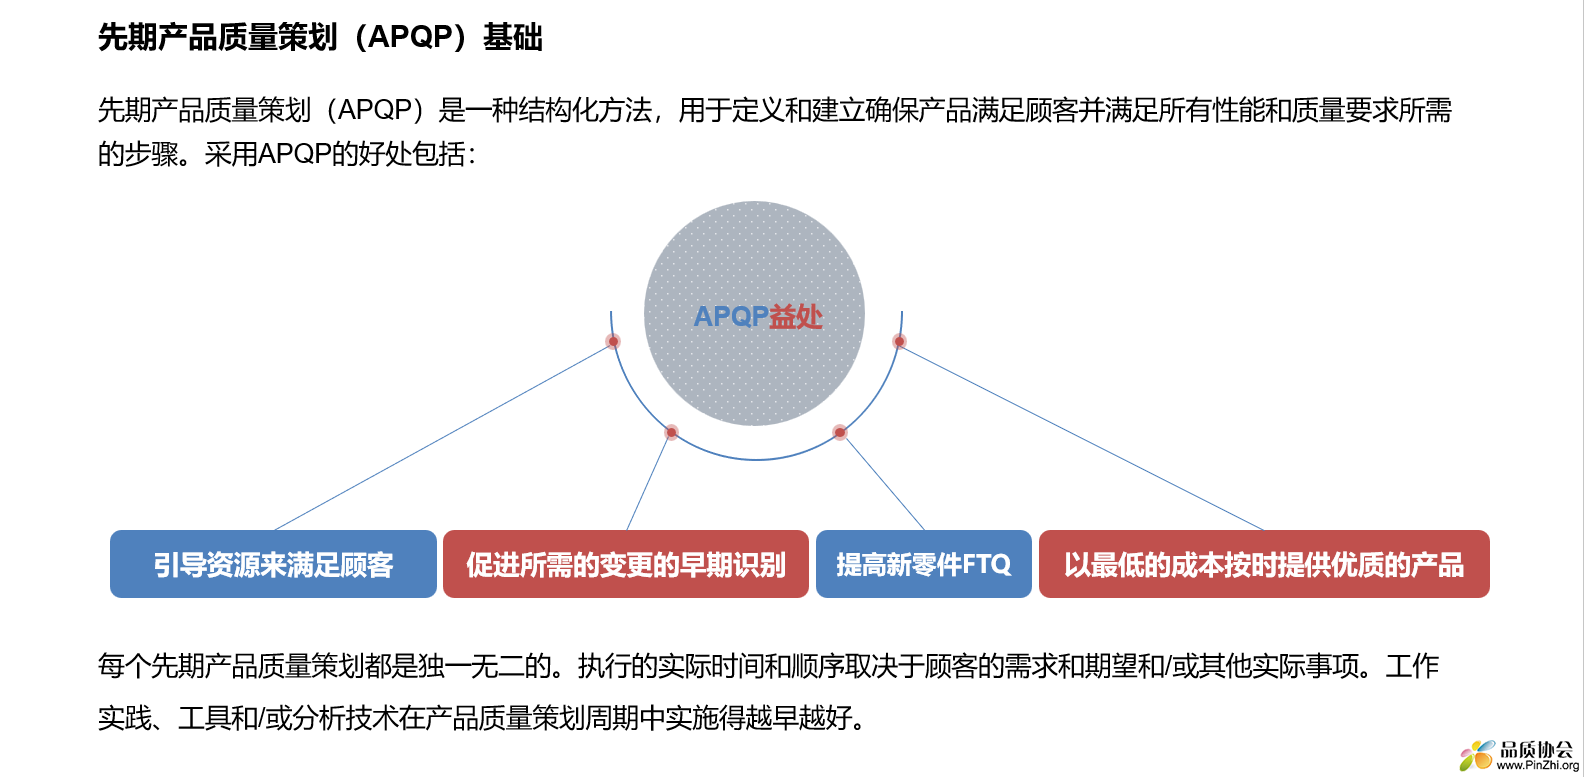 APQP 新版课件视觉效果征询意见